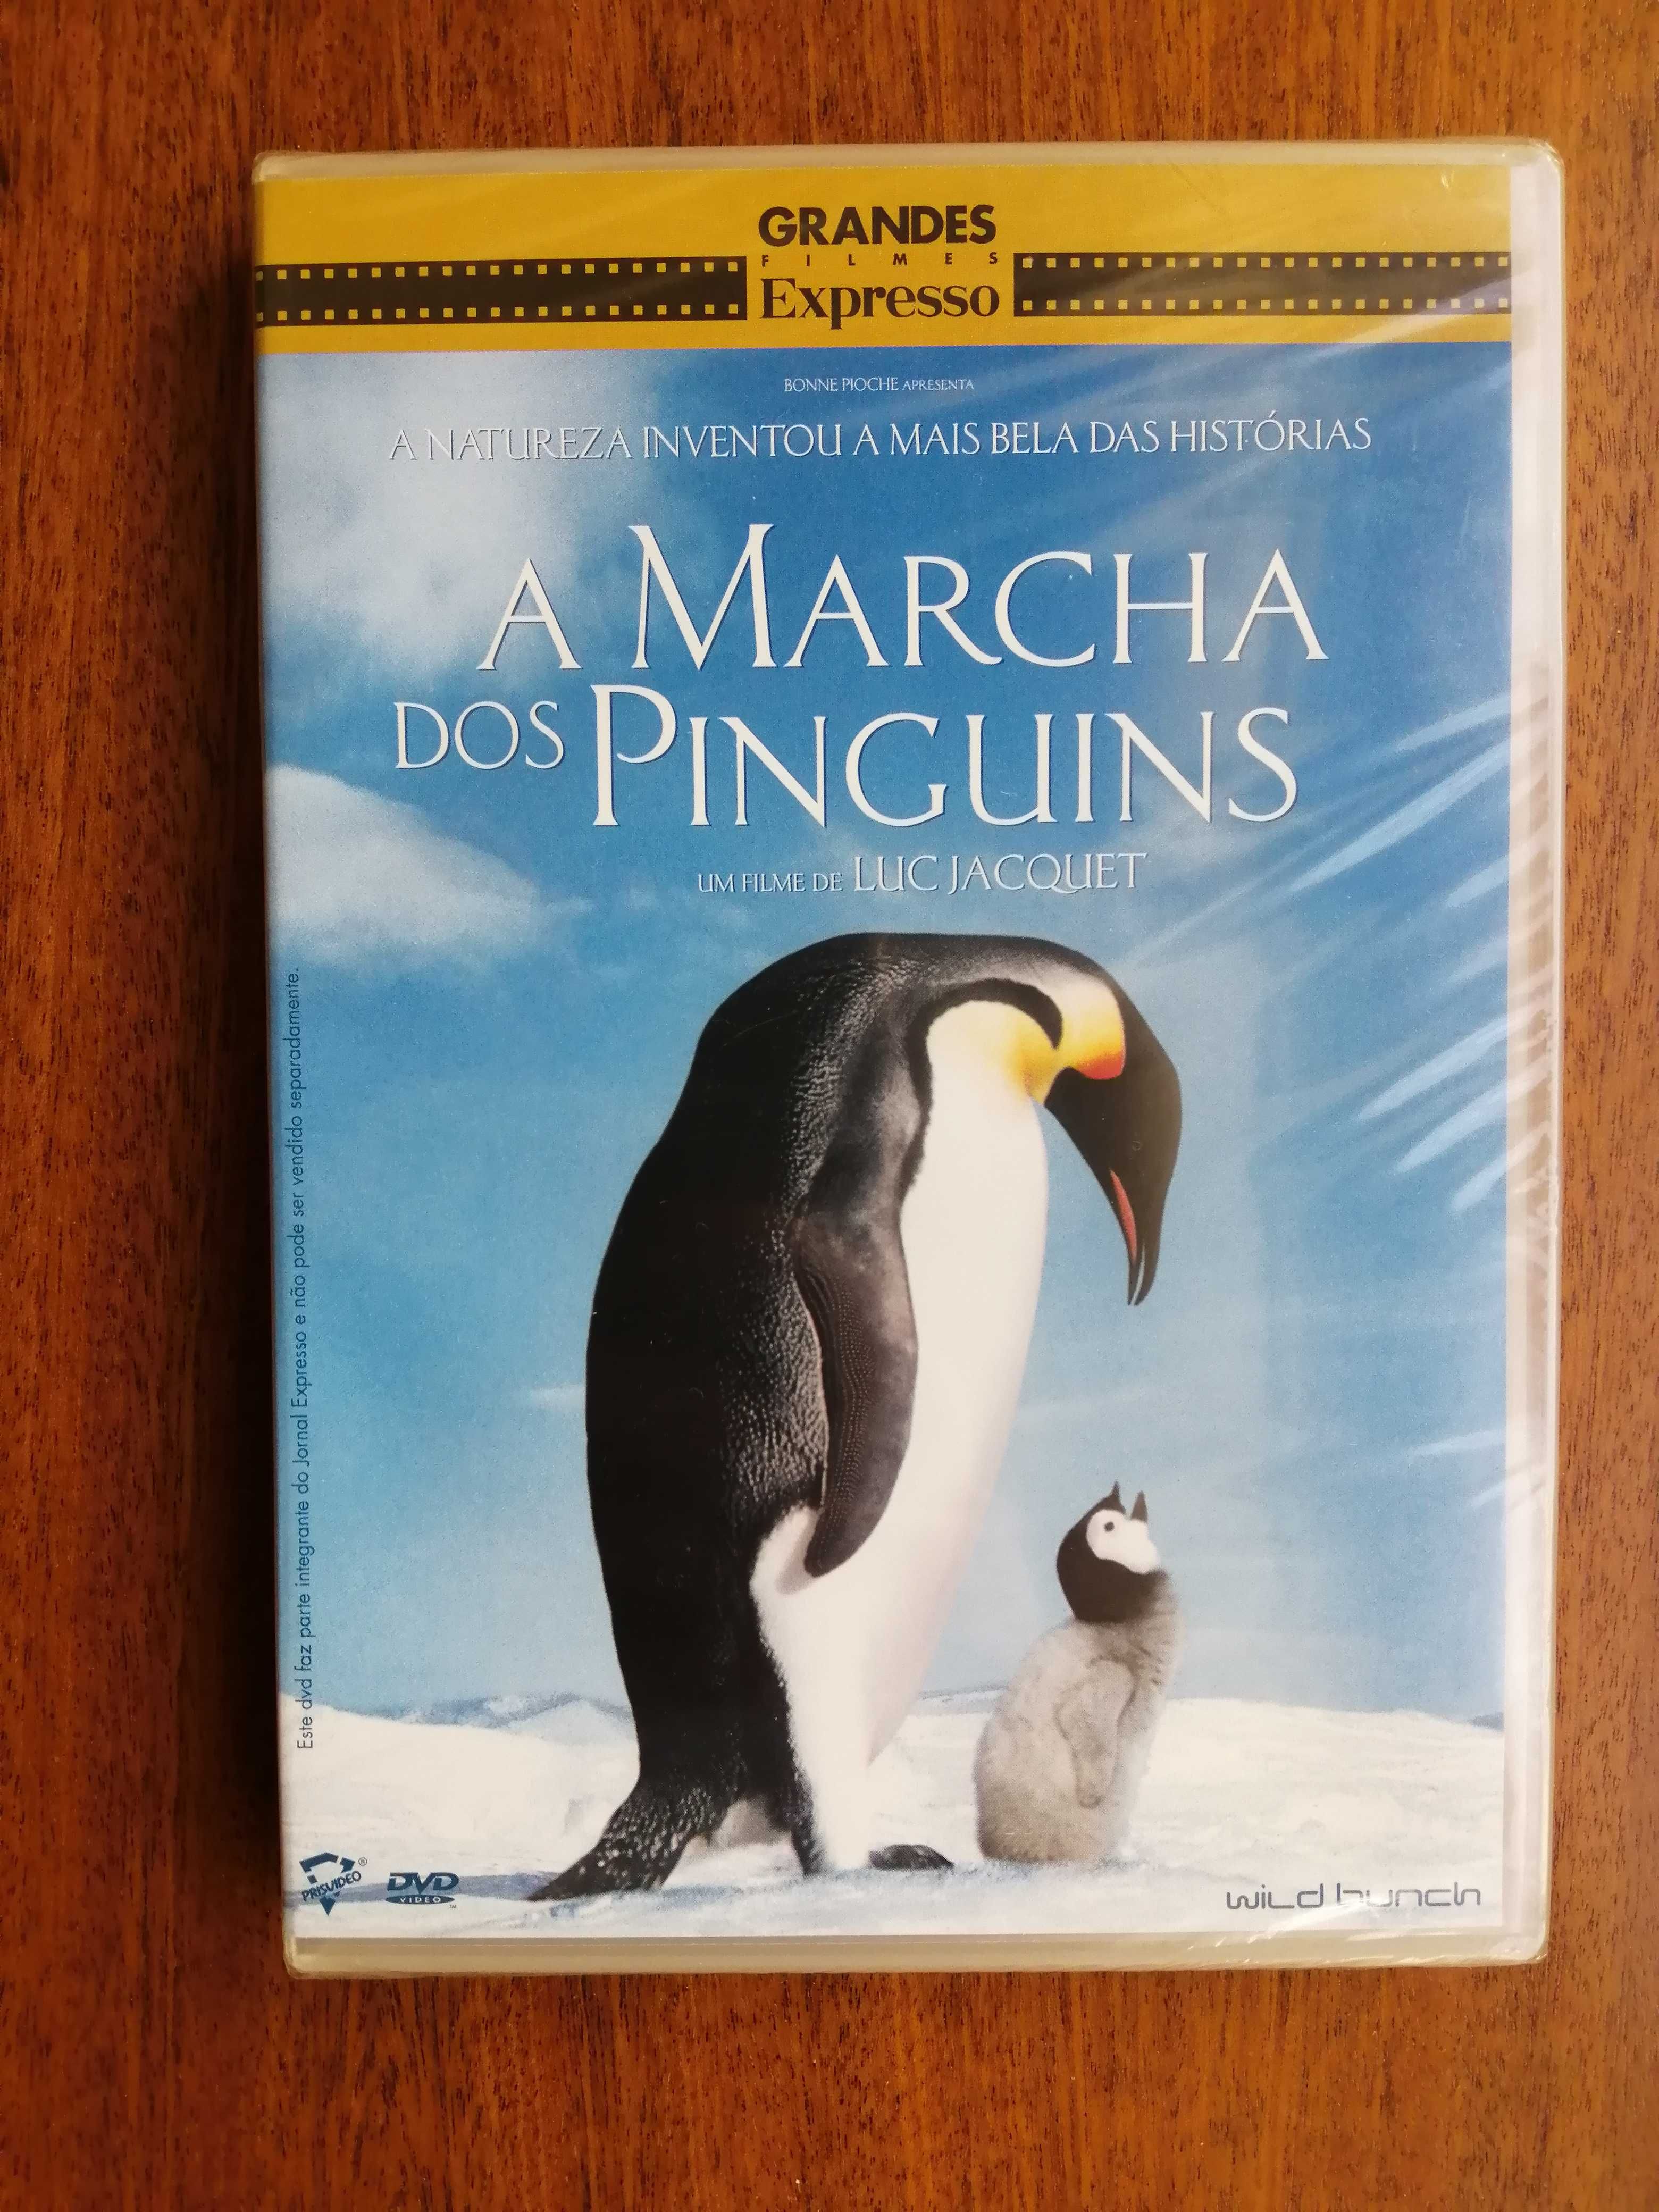 A Marcha dos Pinguins - March of the Penguins DVD (dentro do plástico)